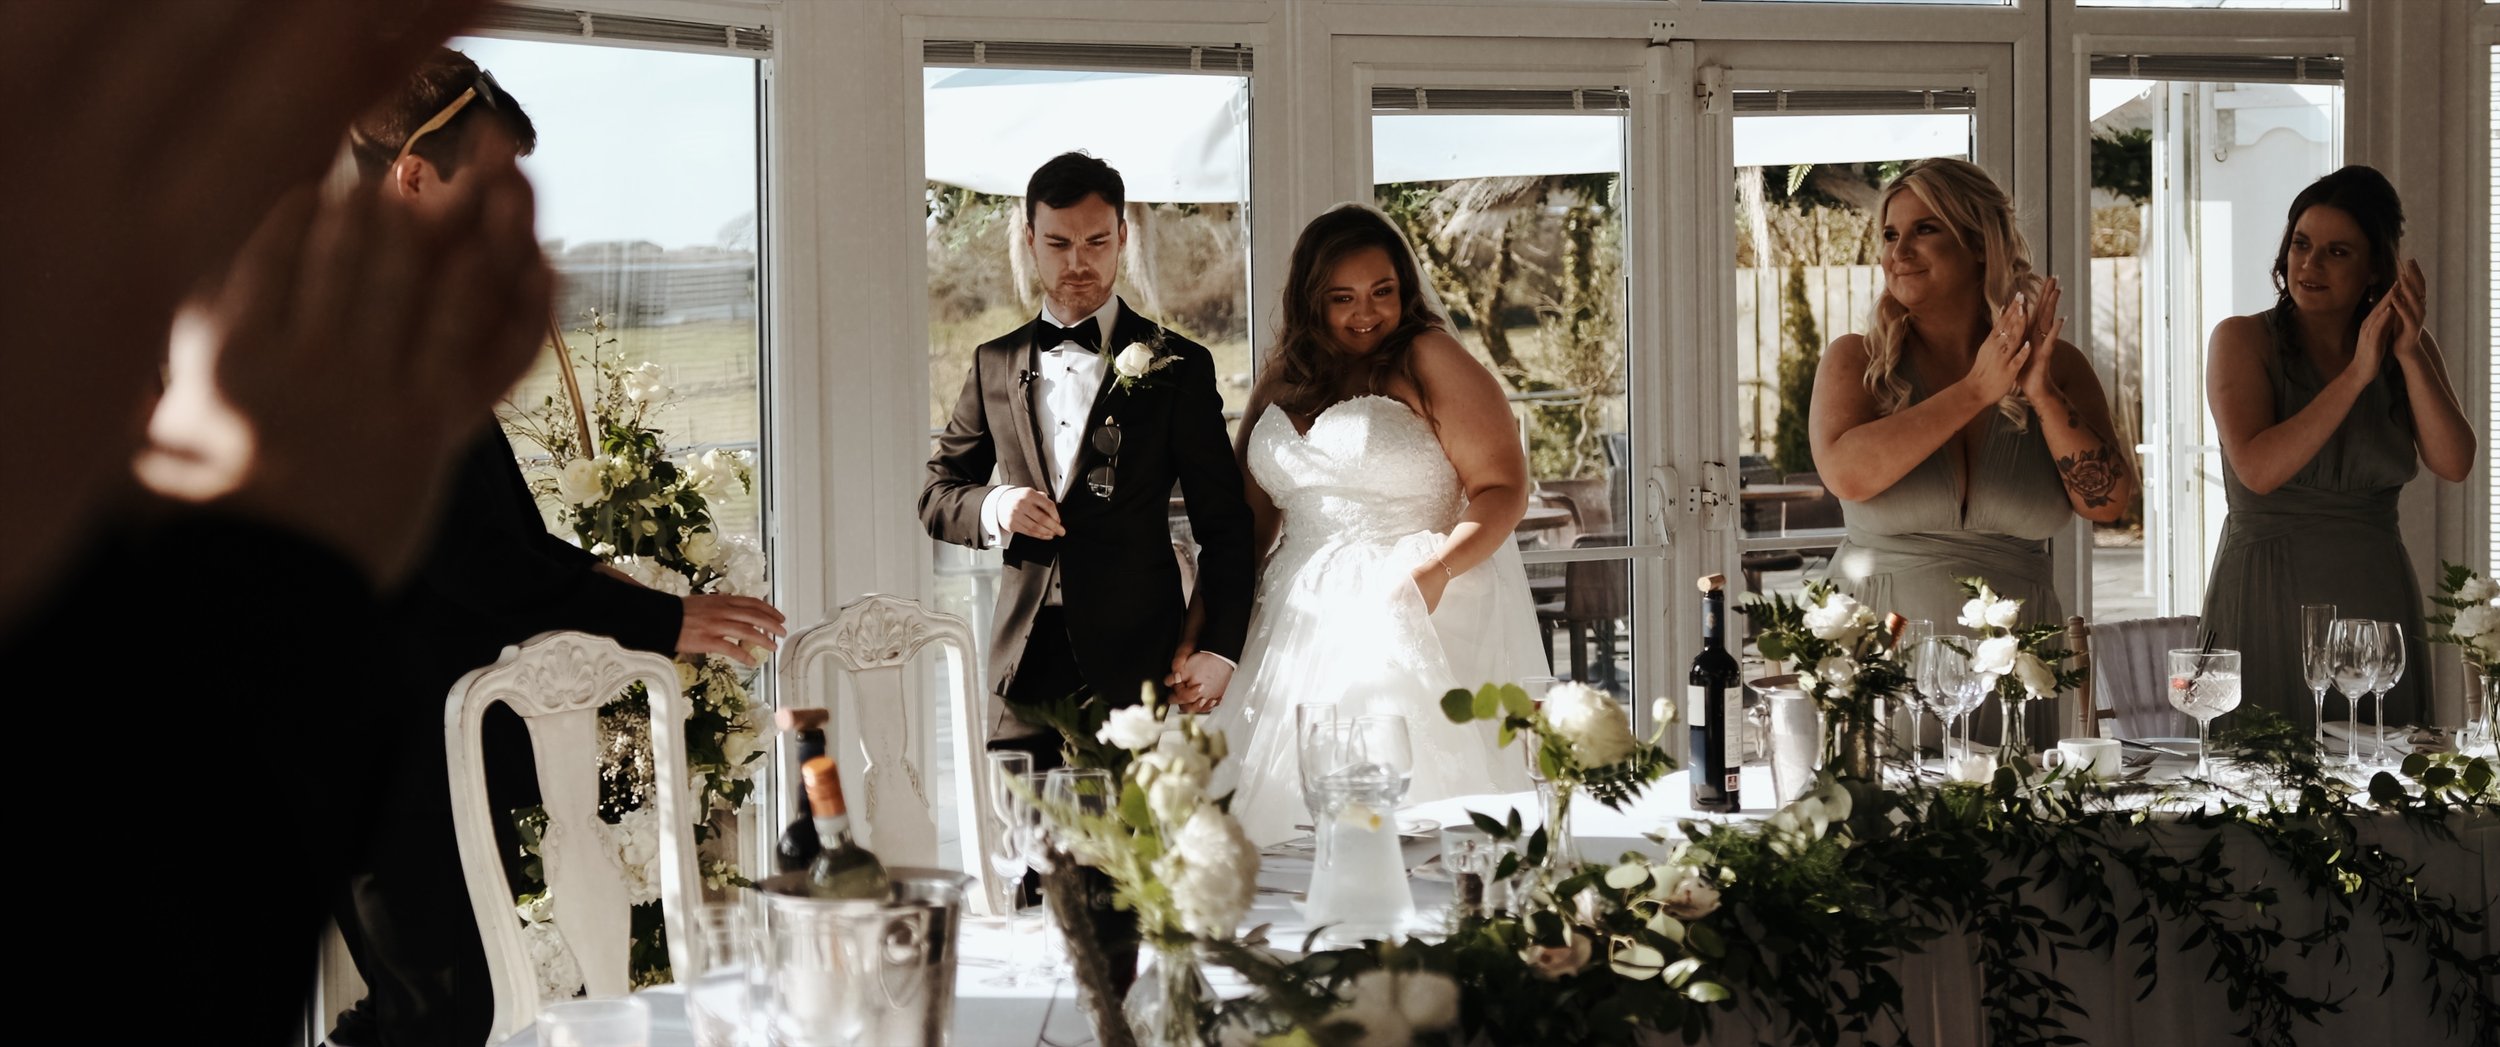 Oldwalls Gower Wedding Videography by Ben Holbrook Films0.jpg